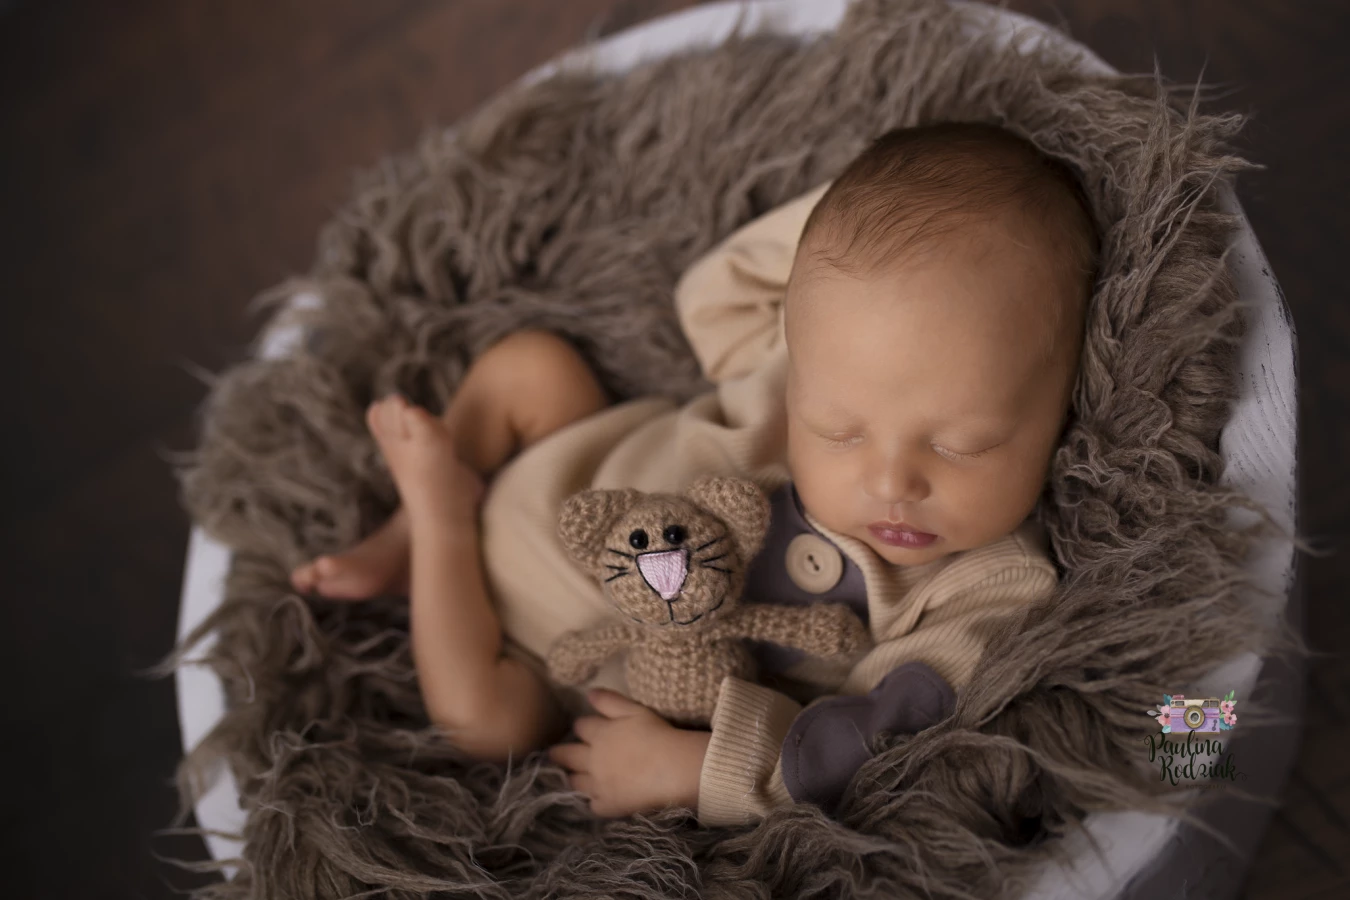 fotograf torun paulina-rodziak-fotografia portfolio zdjecia zdjecia noworodkow sesje noworodkowe niemowlę